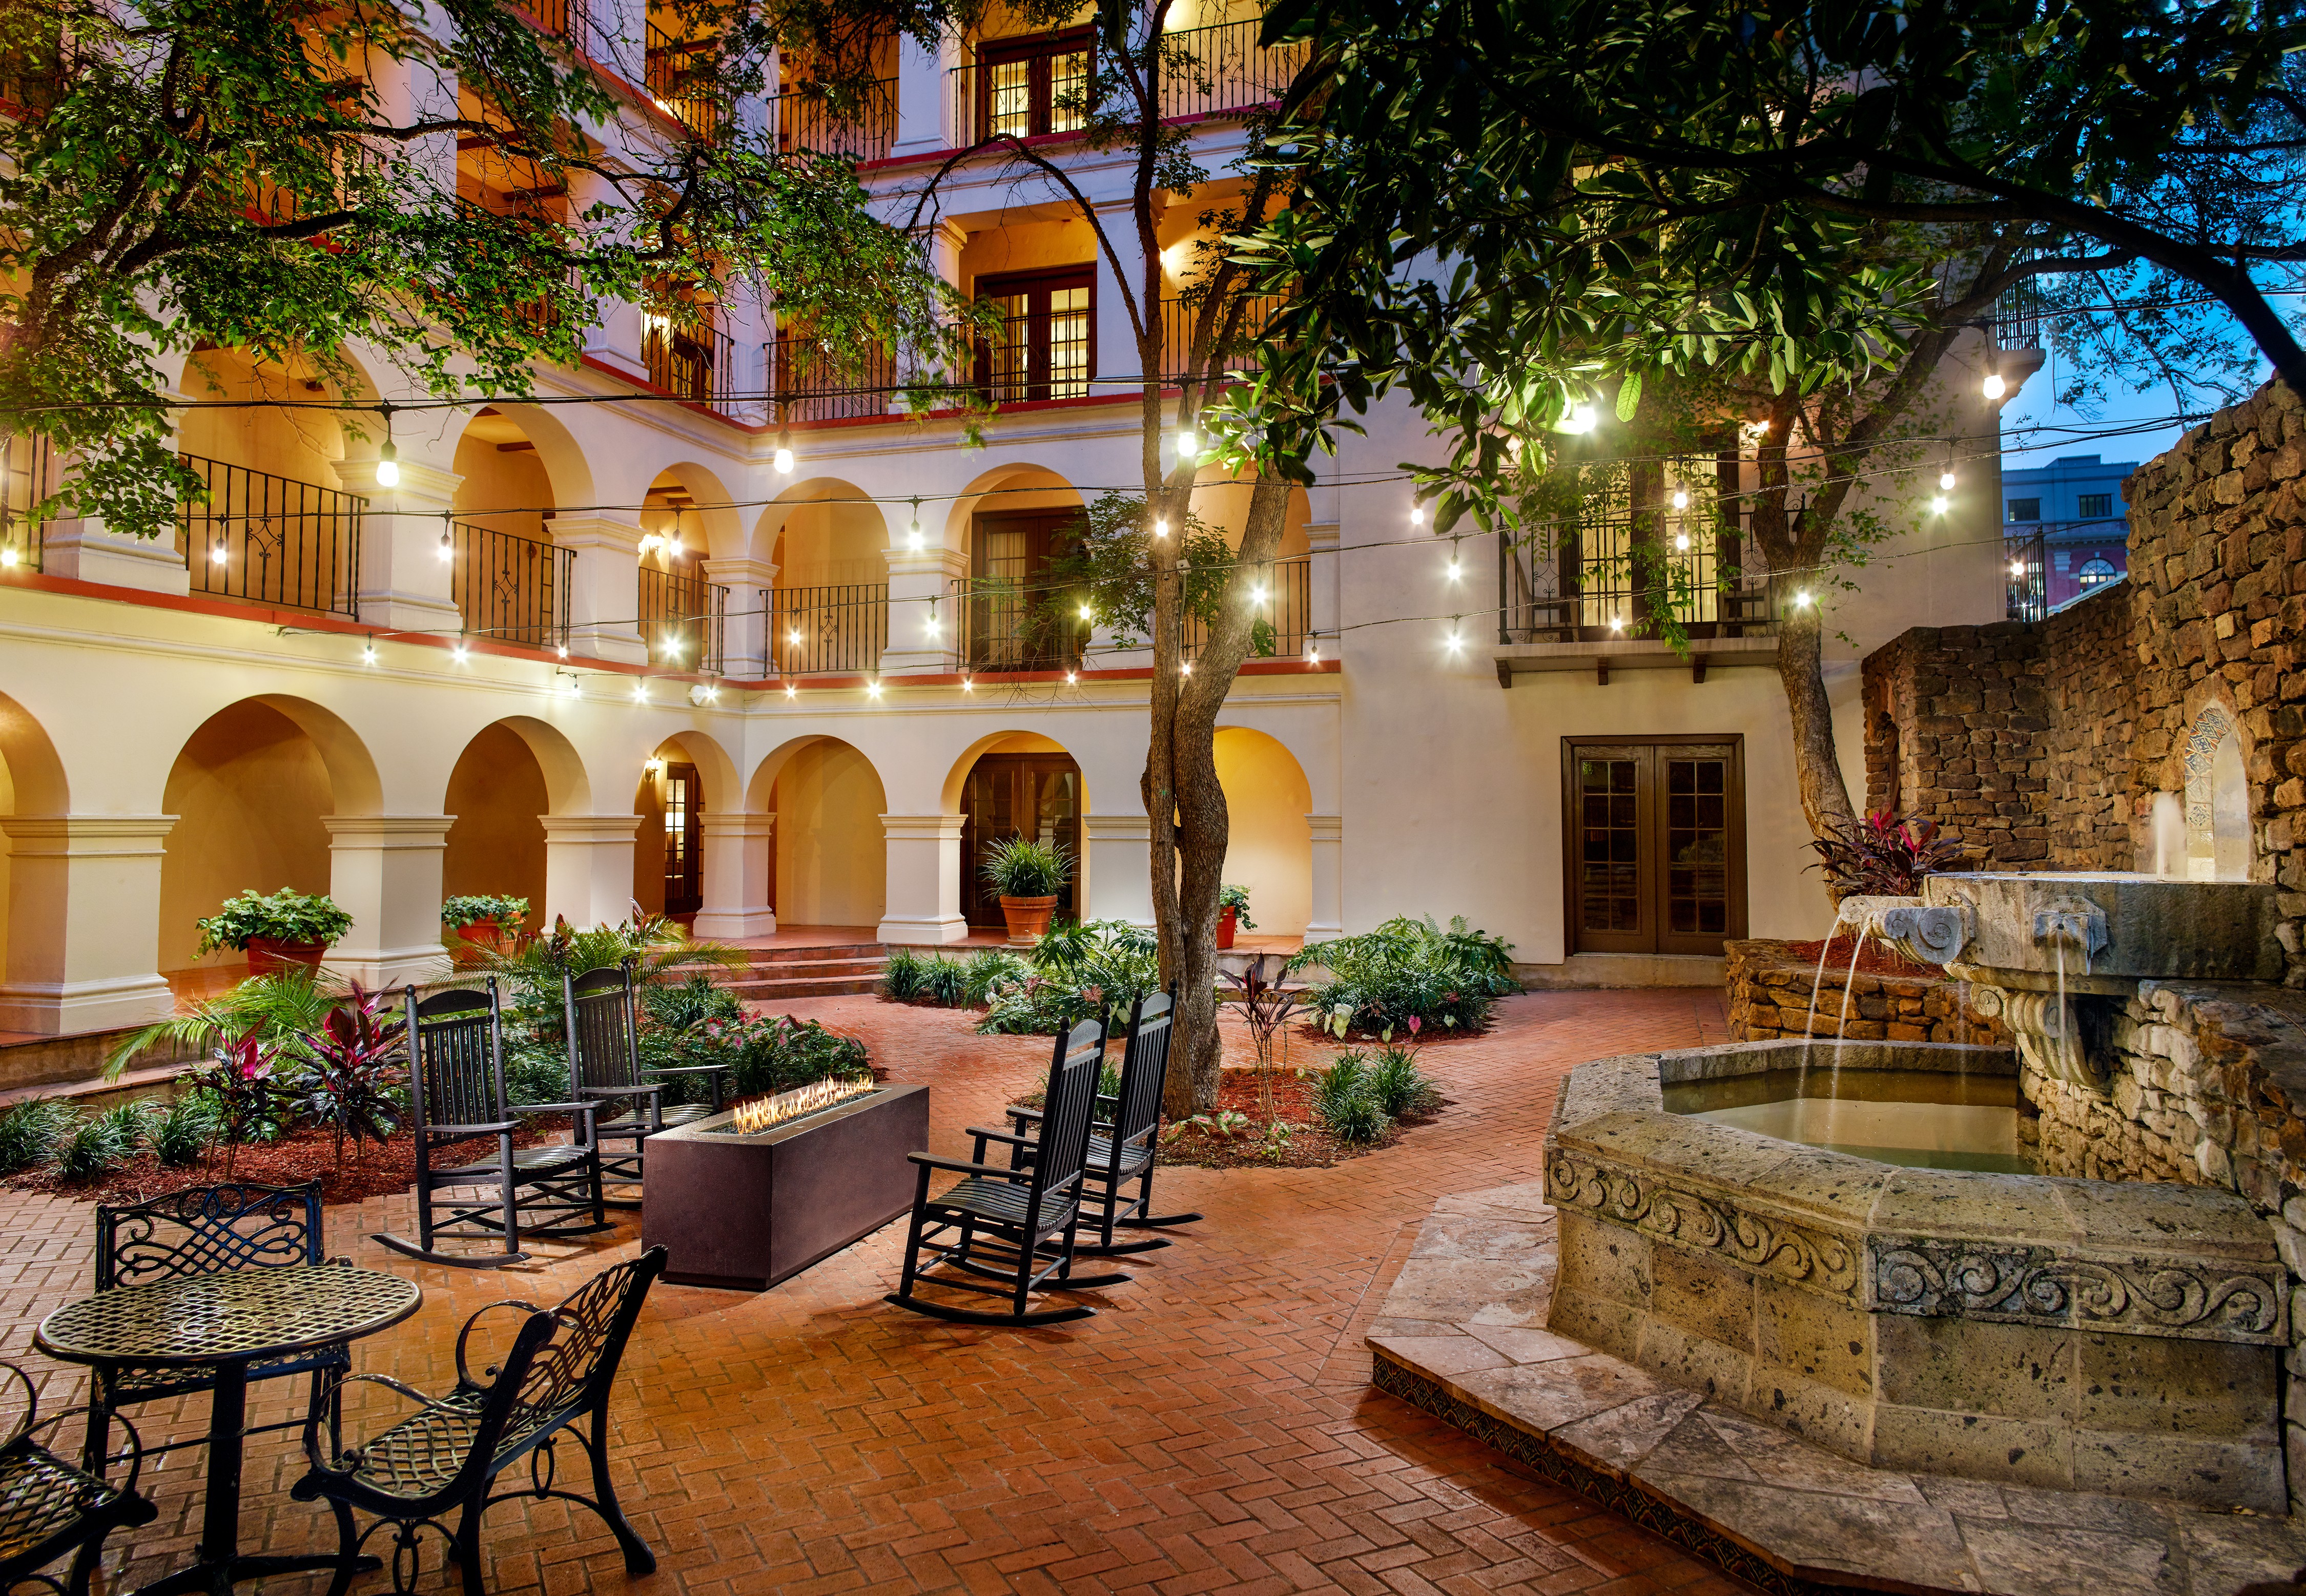 Omni La Mansion courtyard